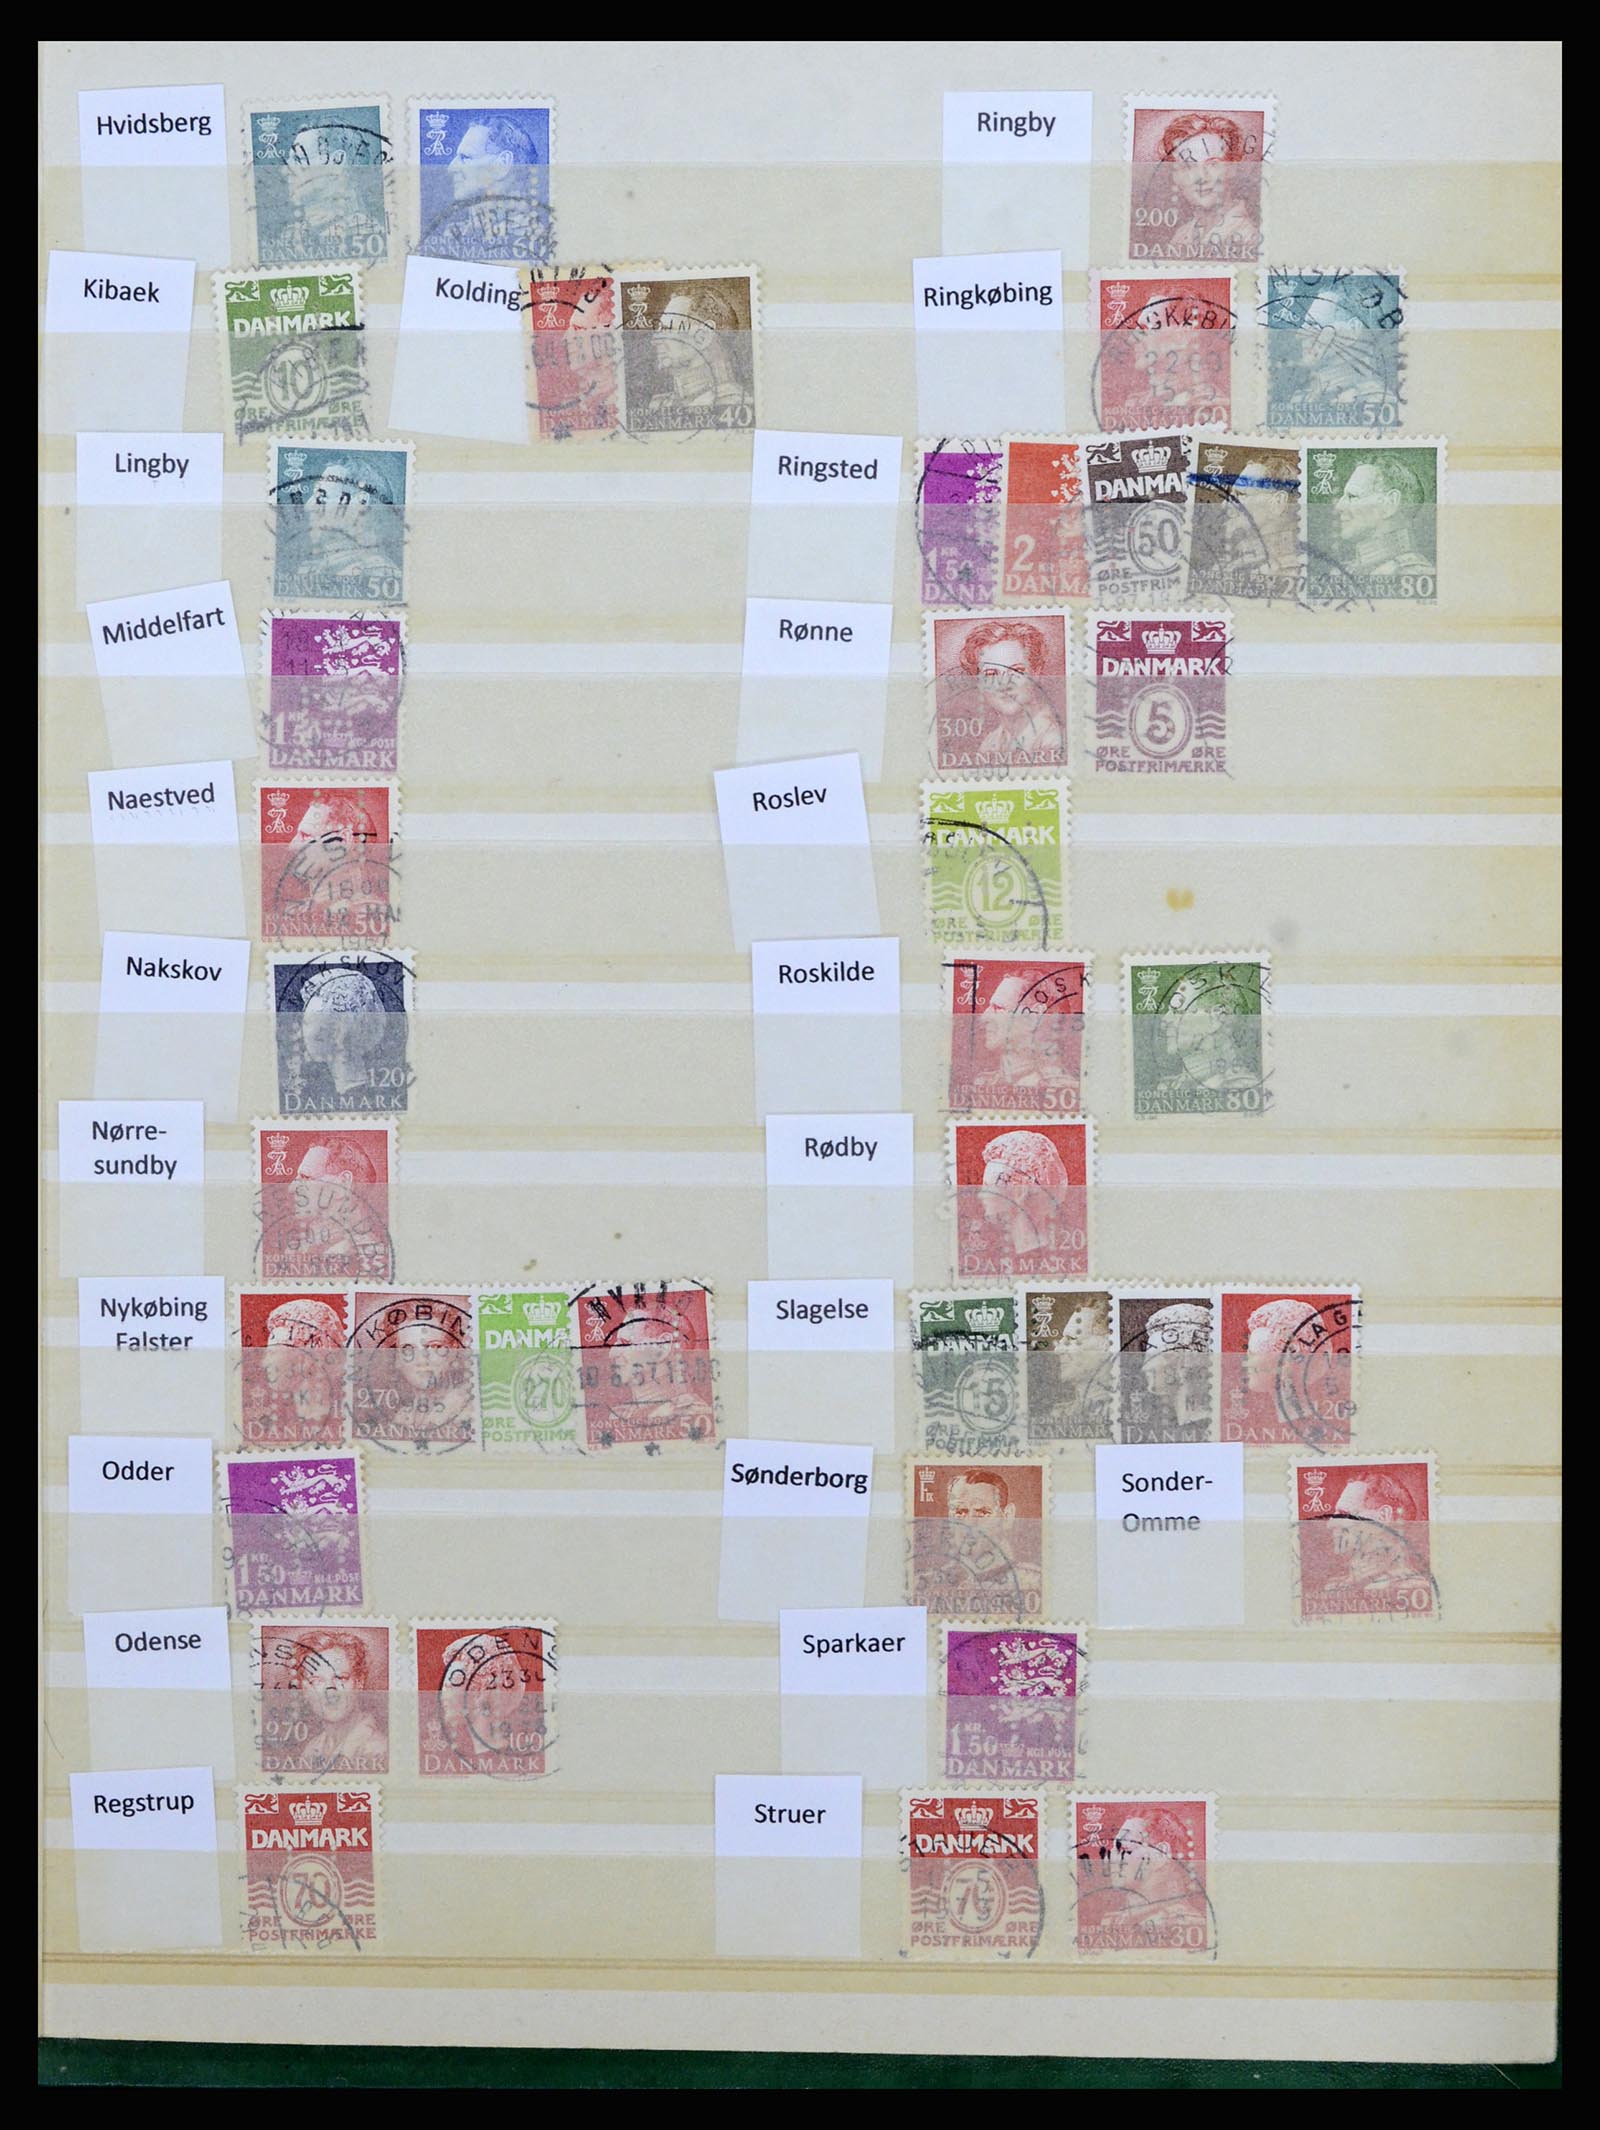 37056 040 - Postzegelverzameling 37056 Denemarken perfins.